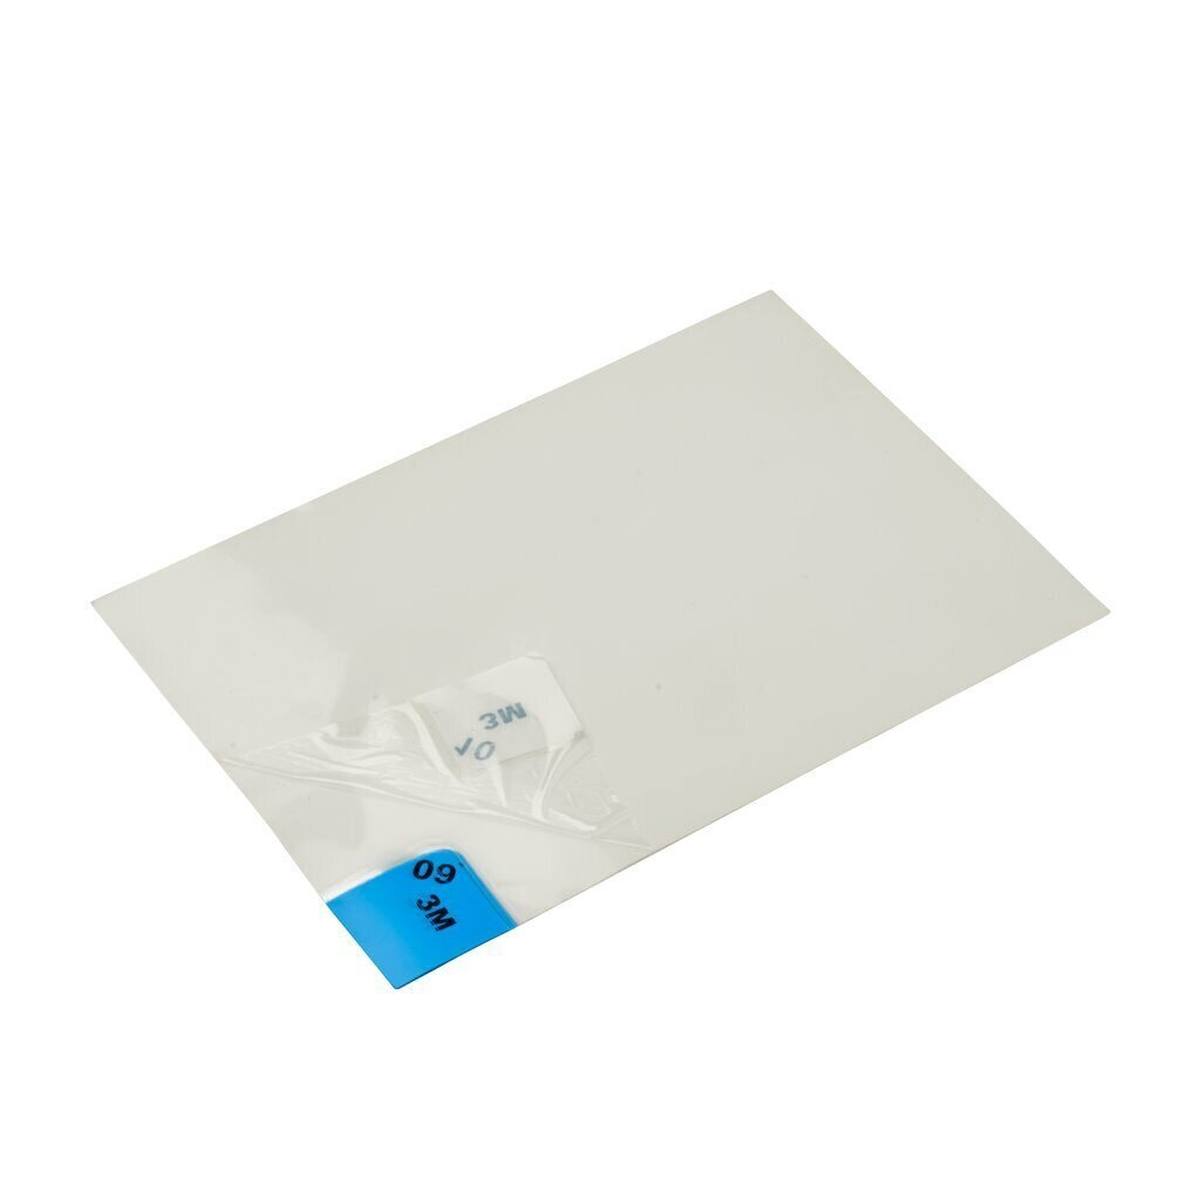 3M 4300 Nomad Feinstaub Adhäsivmatte, weiß, 1,15m x 0,45m, 40Stück transparent Polyethylen-Schichten